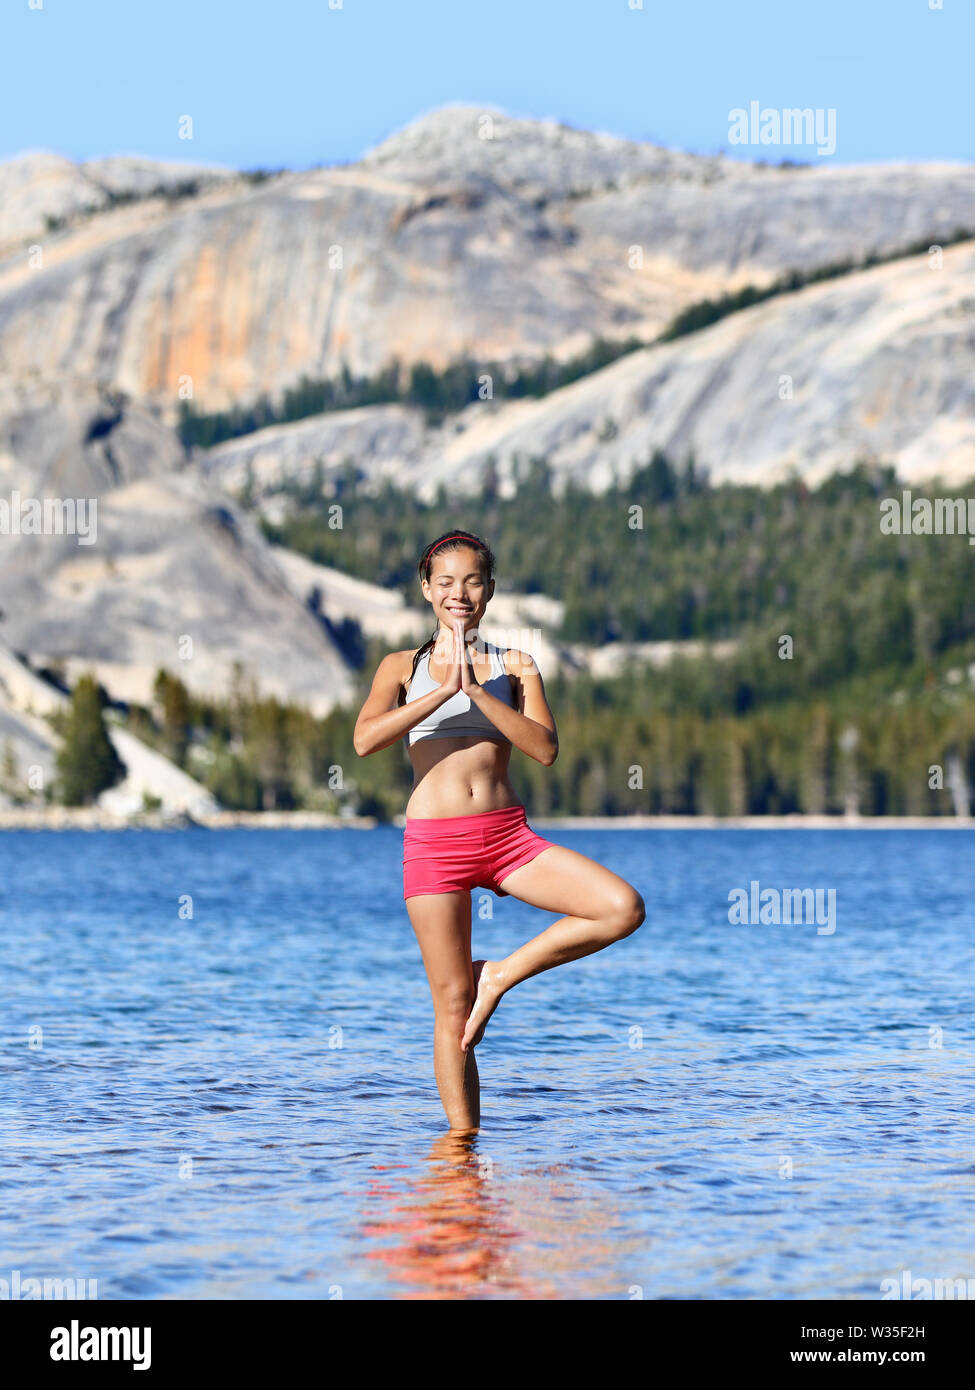 Yoga meditation Frau Meditation in der freien Natur relaxen im Yoga Haltung, Baum, vrksasana. Entspannte ruhige asiatische Frau genießen Sommer in einem See in Yosemite National Park, Kalifornien, USA. Stockfoto